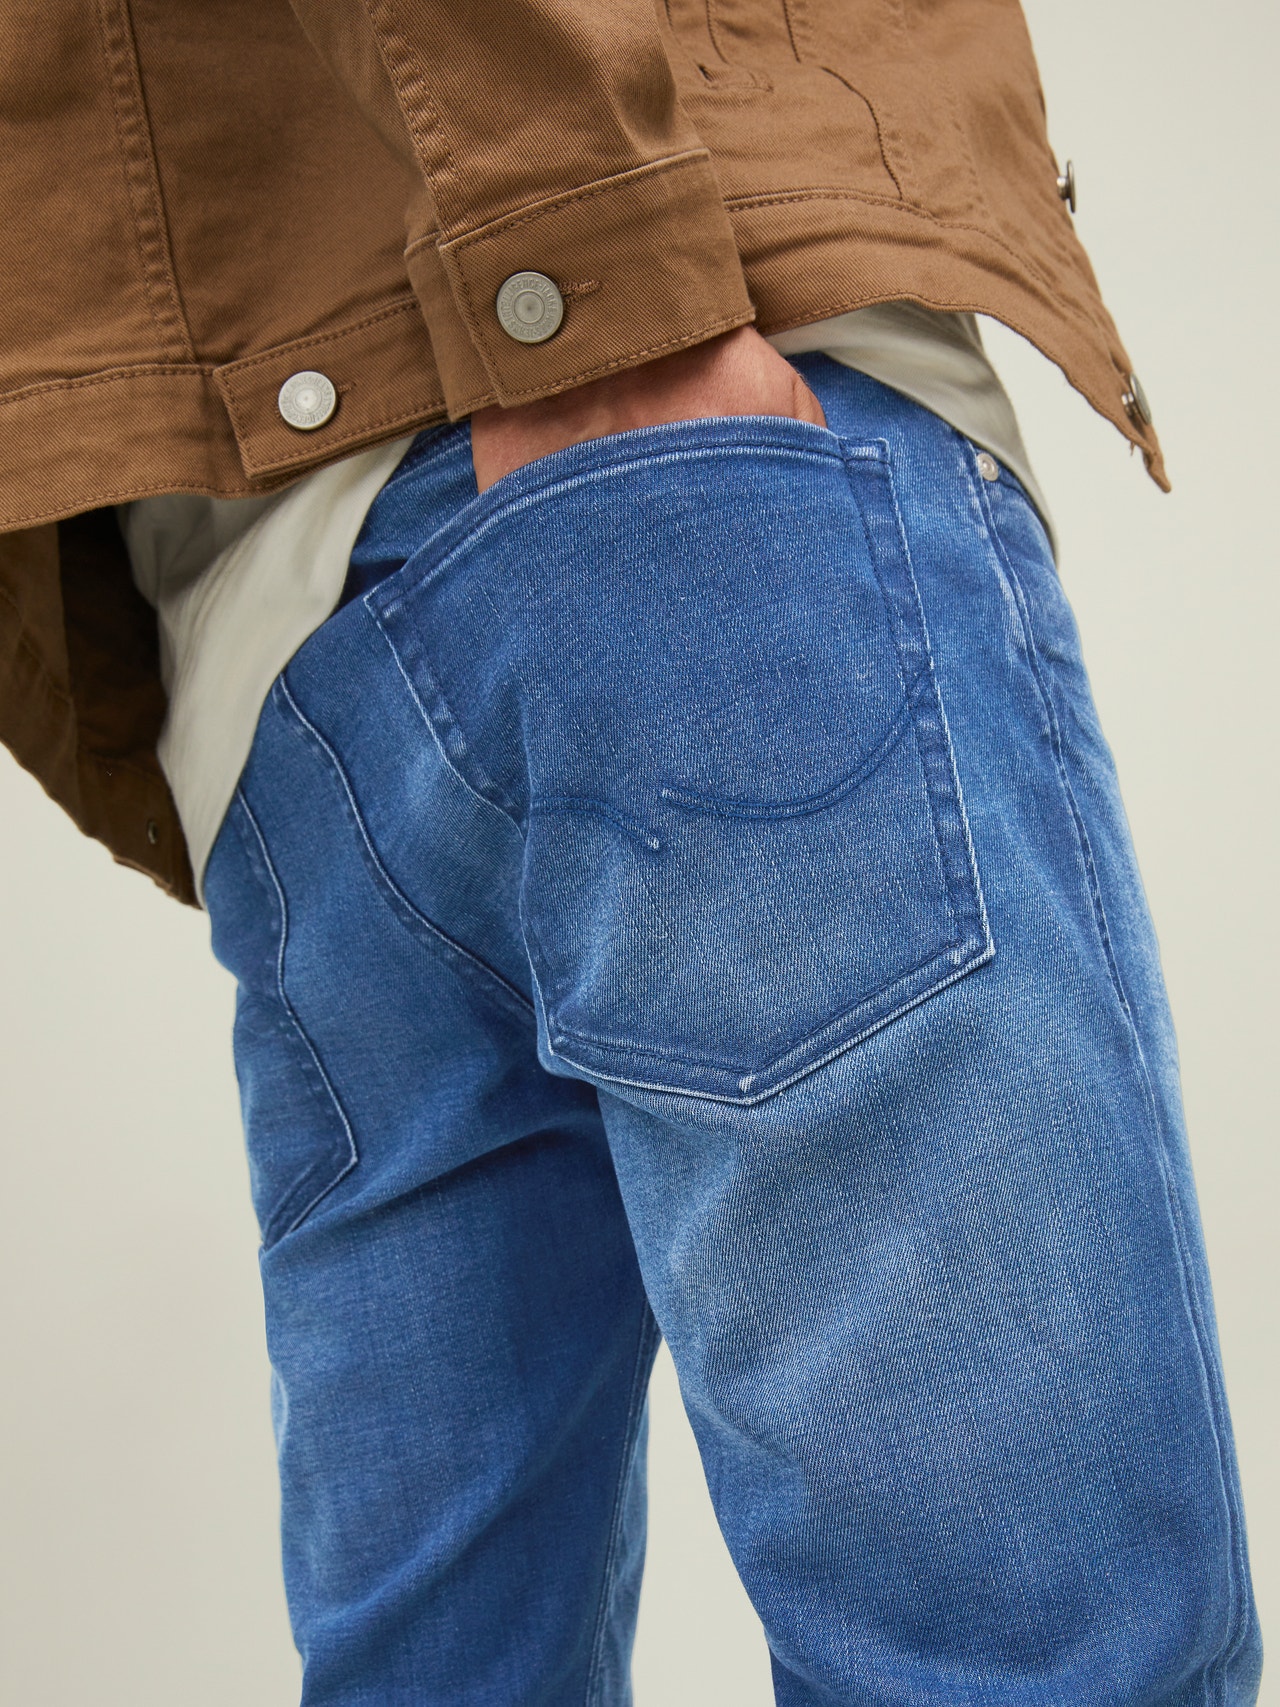 Jack & Jones JJITIM JJOLIVER JOS 419 LID Slim Straight Fit jeans -Blue Denim - 12217104